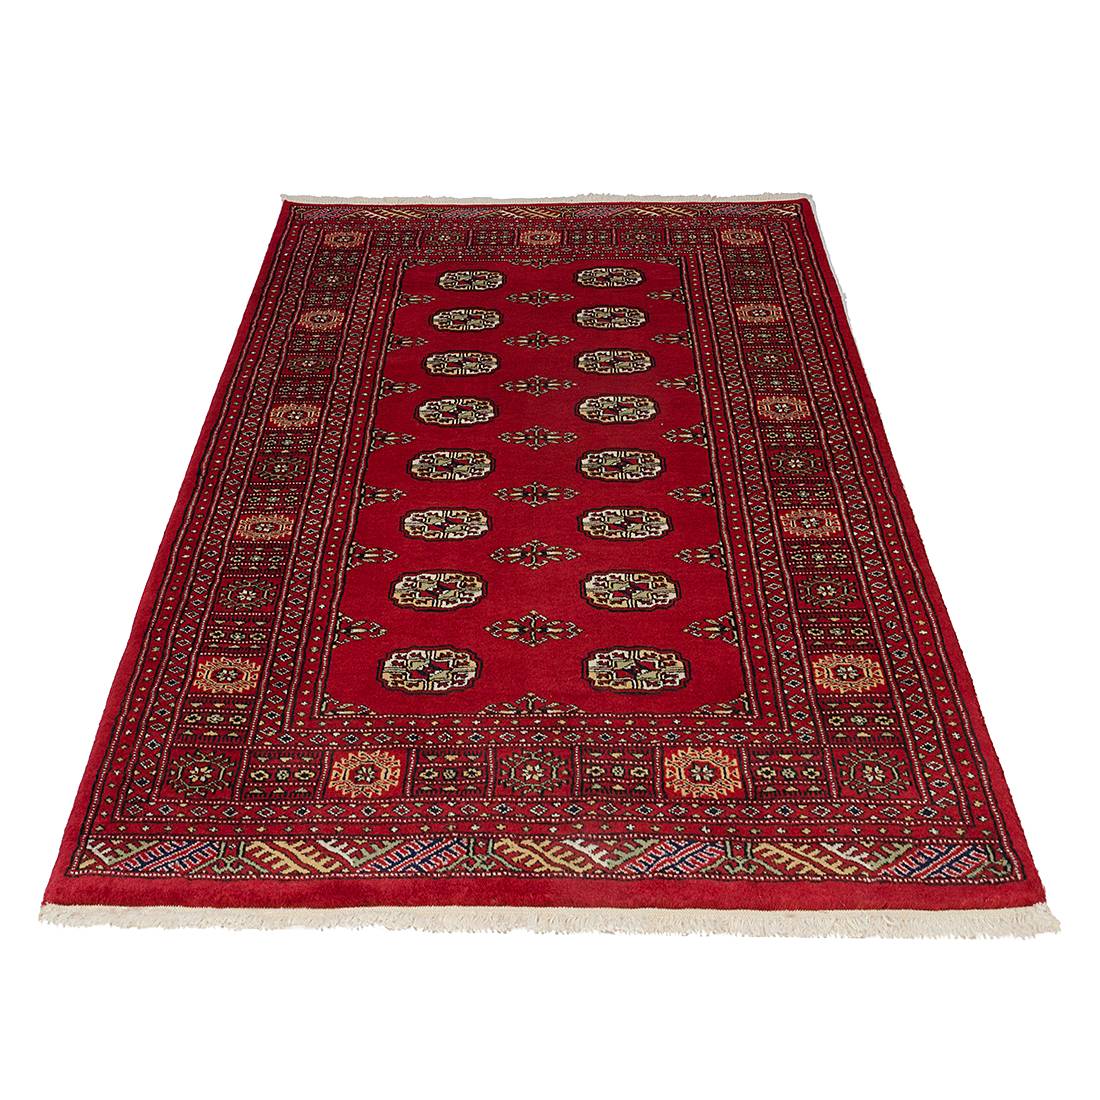 Teppich Pakistan Omara Delux - Rot - 170 x 240 cm, Parwis